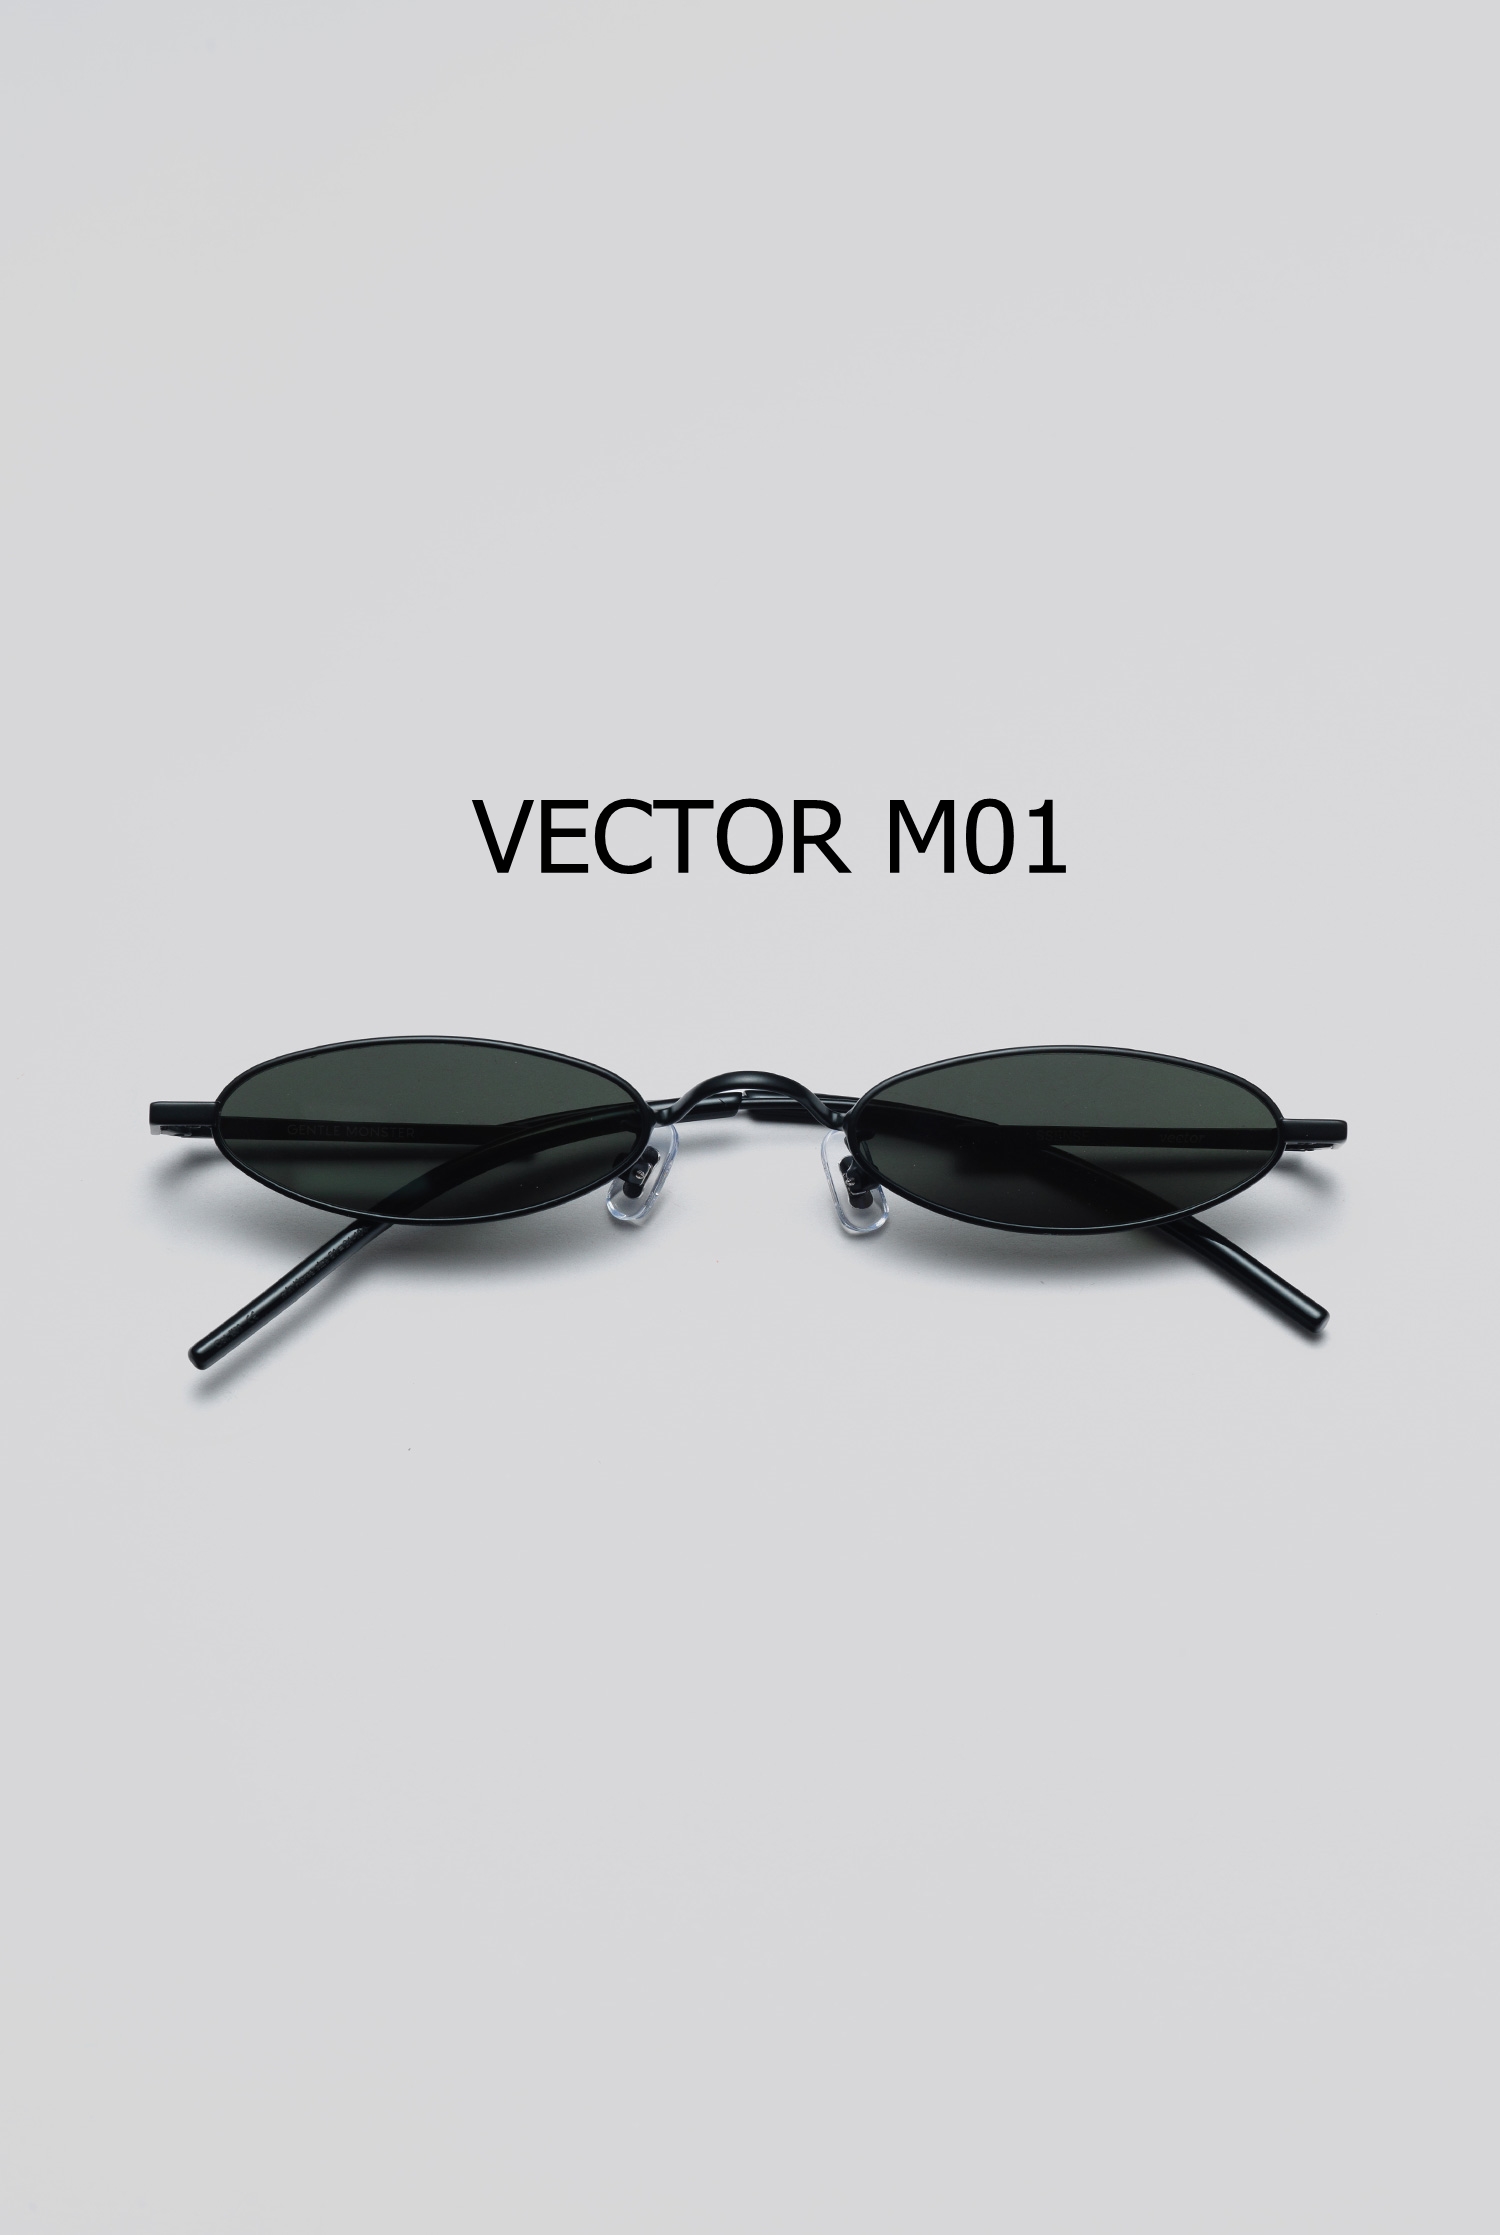 VECTOR M01